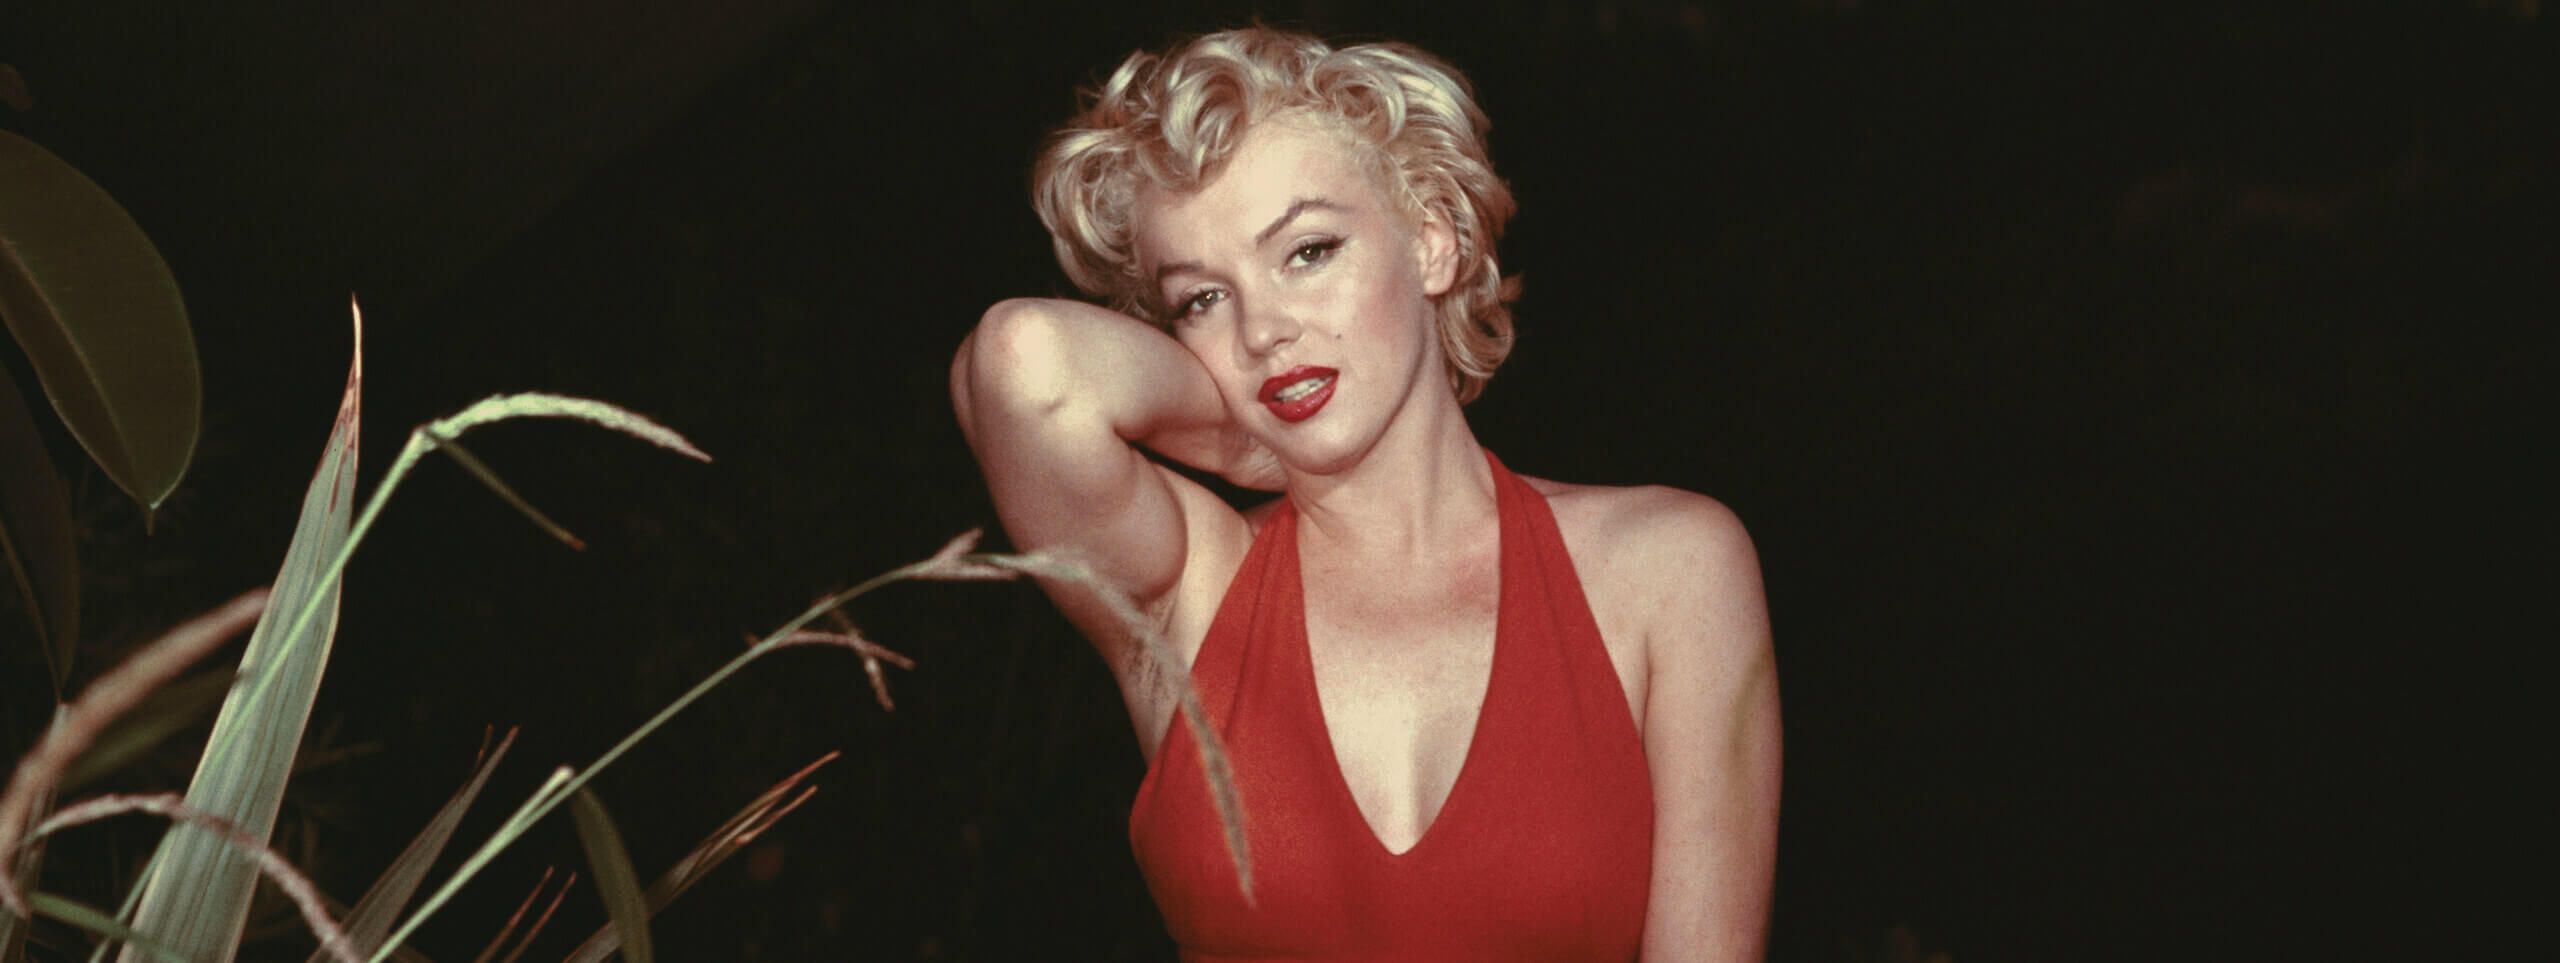 Marilyn-Monroes-Frisur